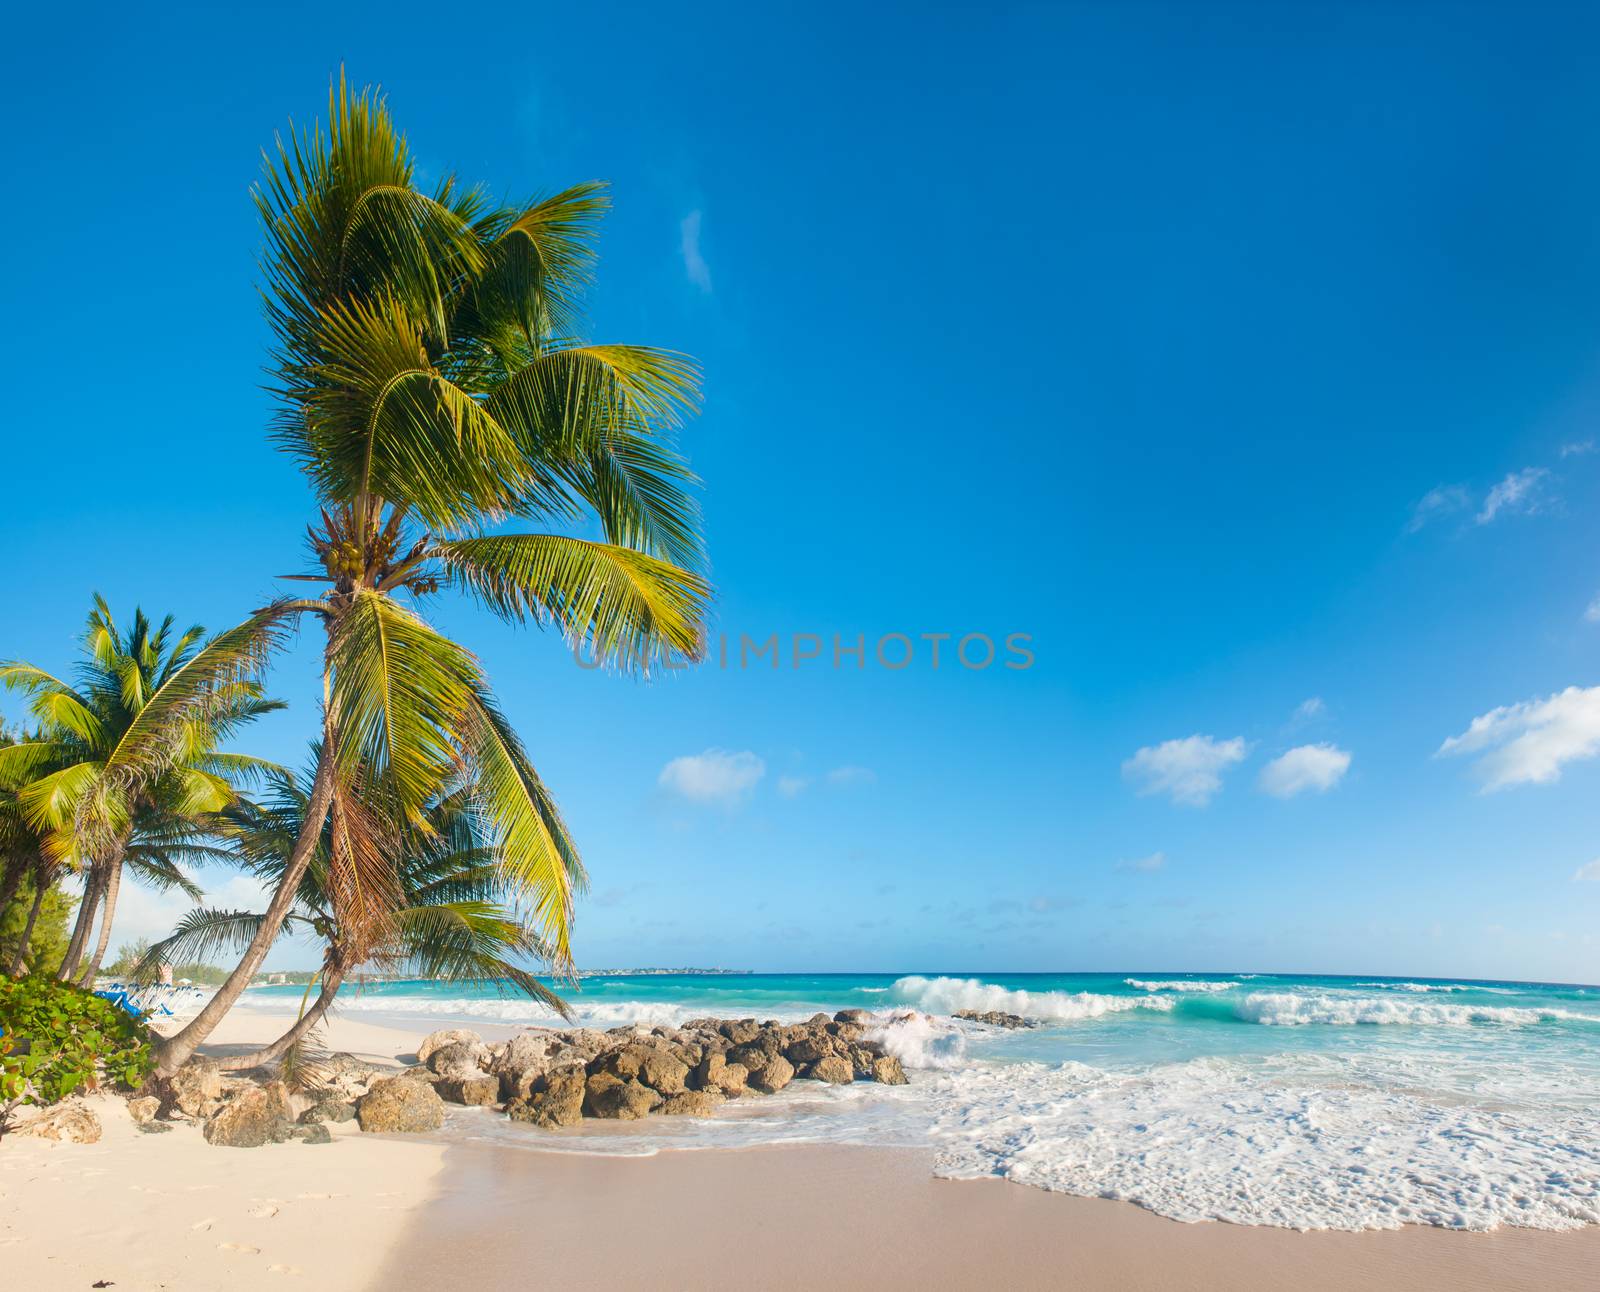 Barbados by fyletto